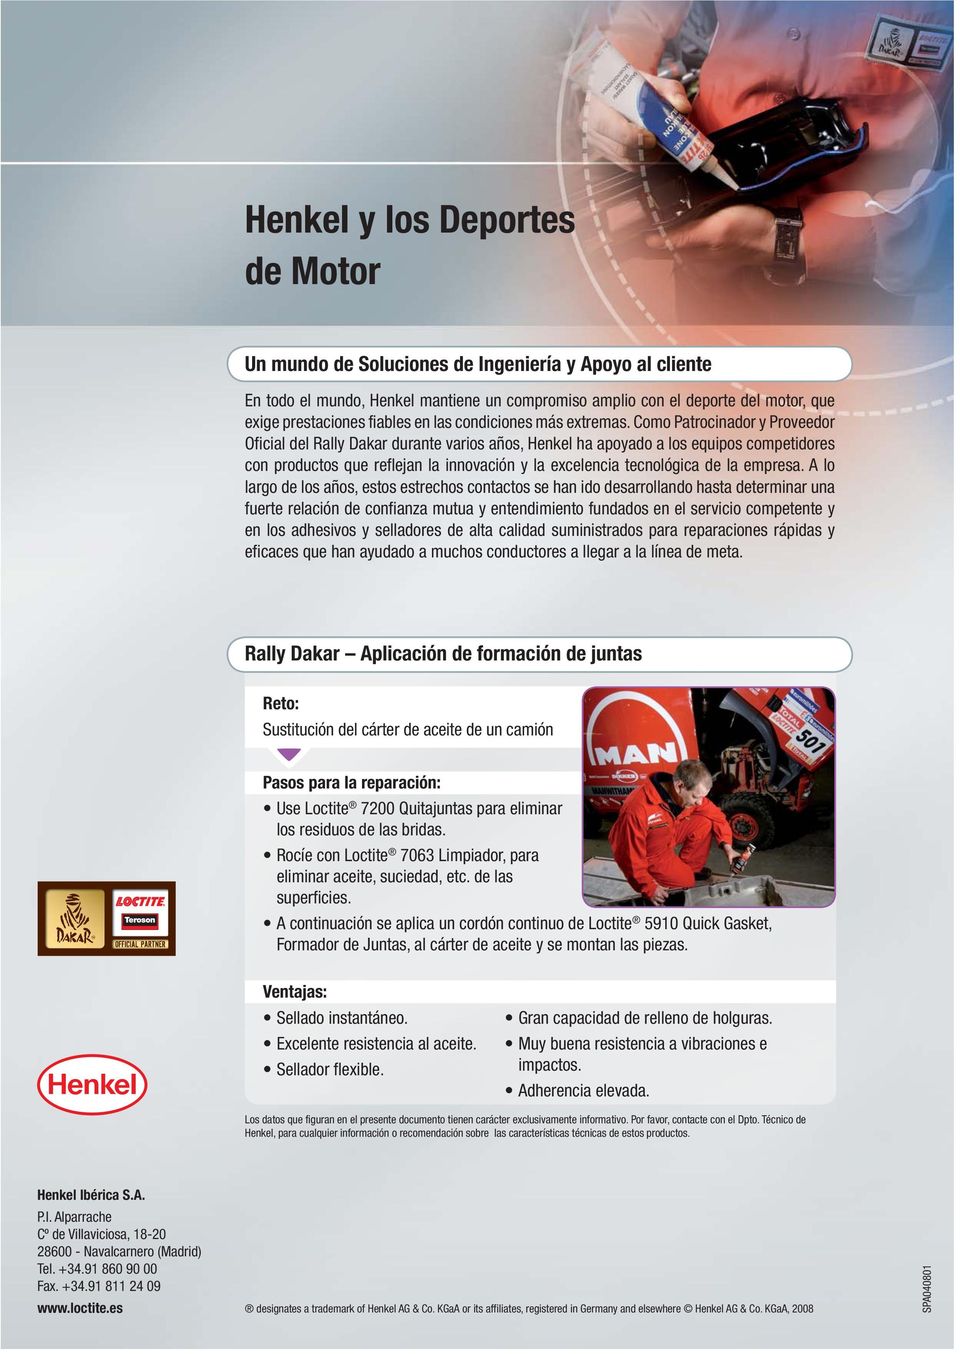 Como Patrocinador y Proveedor Oficial del Rally Dakar durante varios años, Henkel ha apoyado a los equipos competidores con productos que reflejan la innovación y la excelencia tecnológica de la